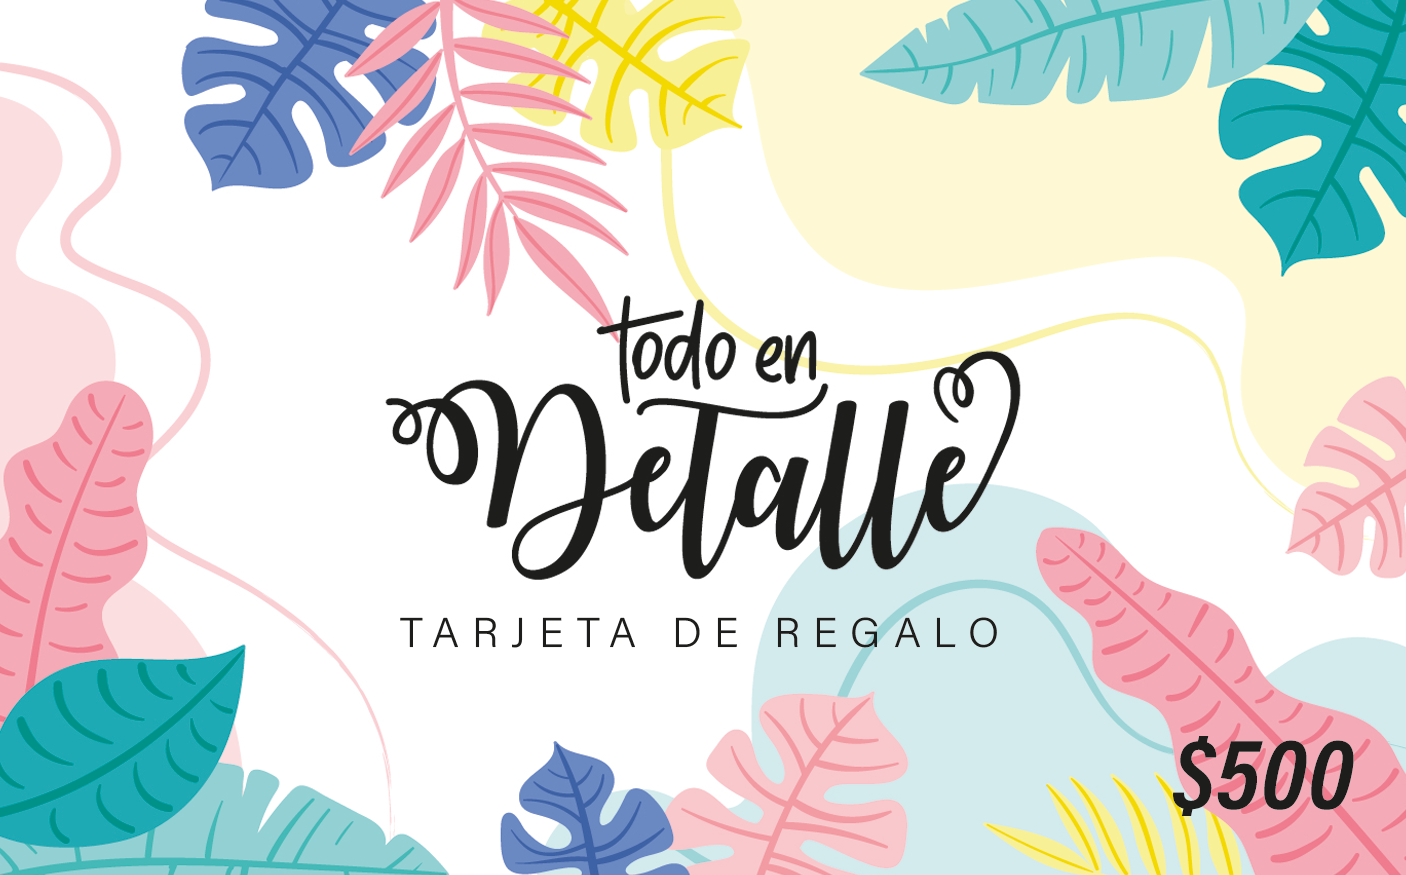 Tarjeta de Regalo - Todo en Detalle